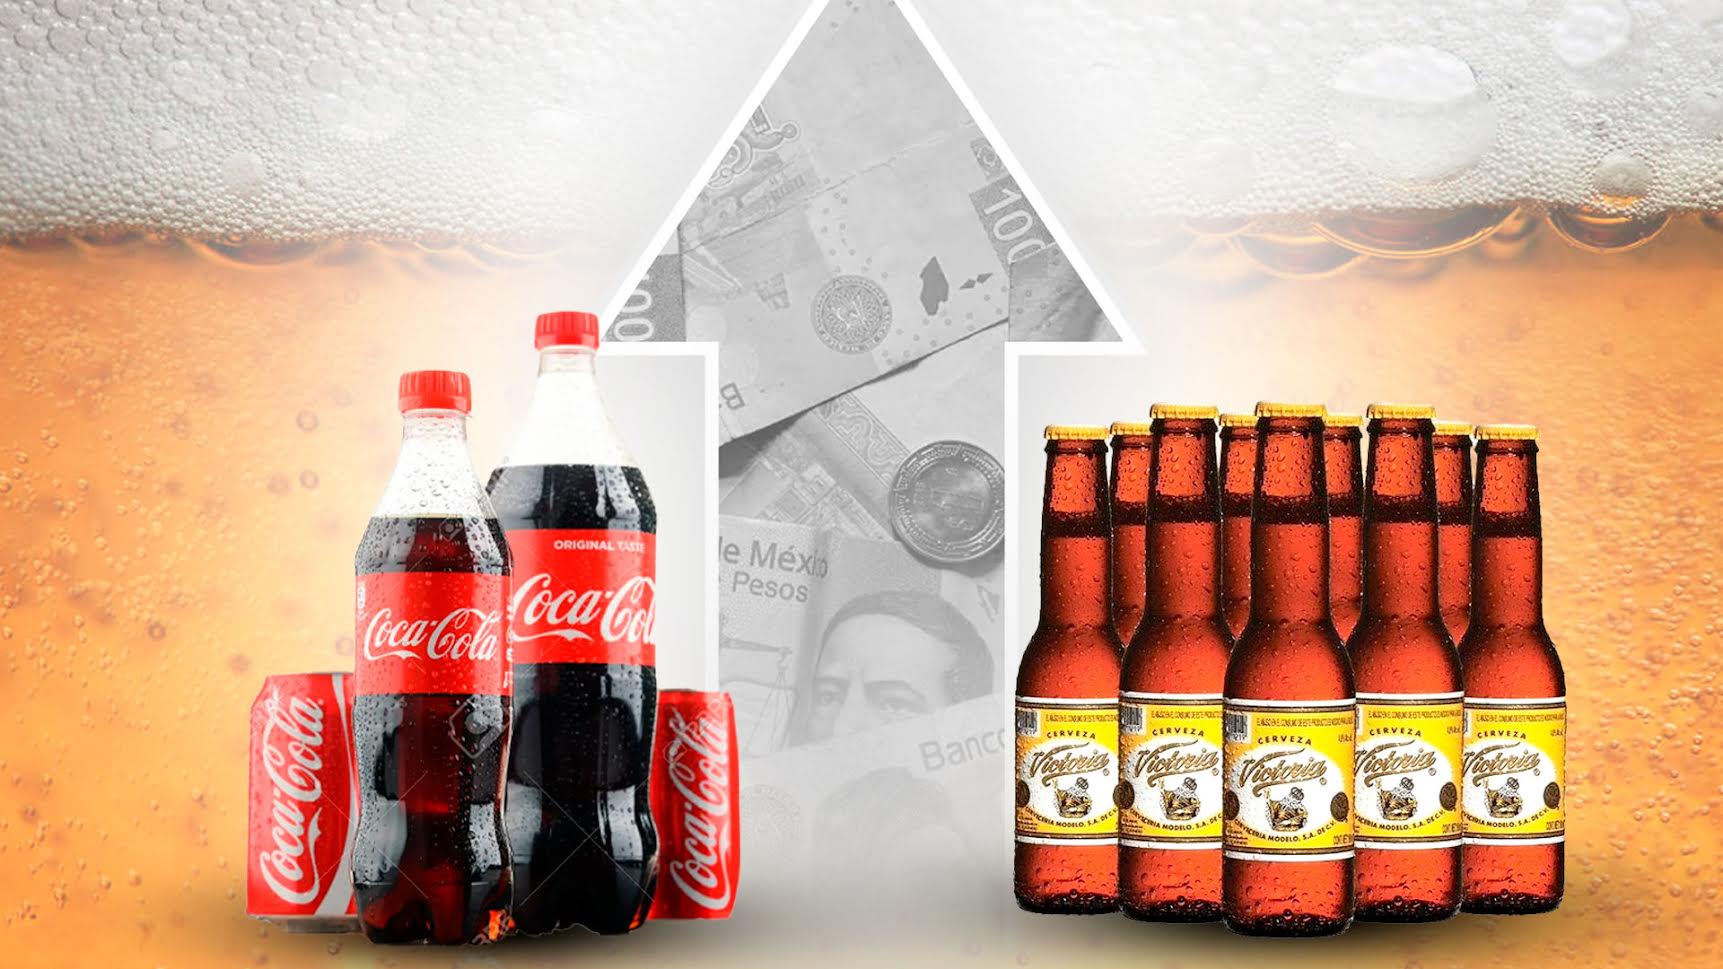 Refrescos, jugos y cerveza: cuánto costarán estas bebidas tras el aumento de precios